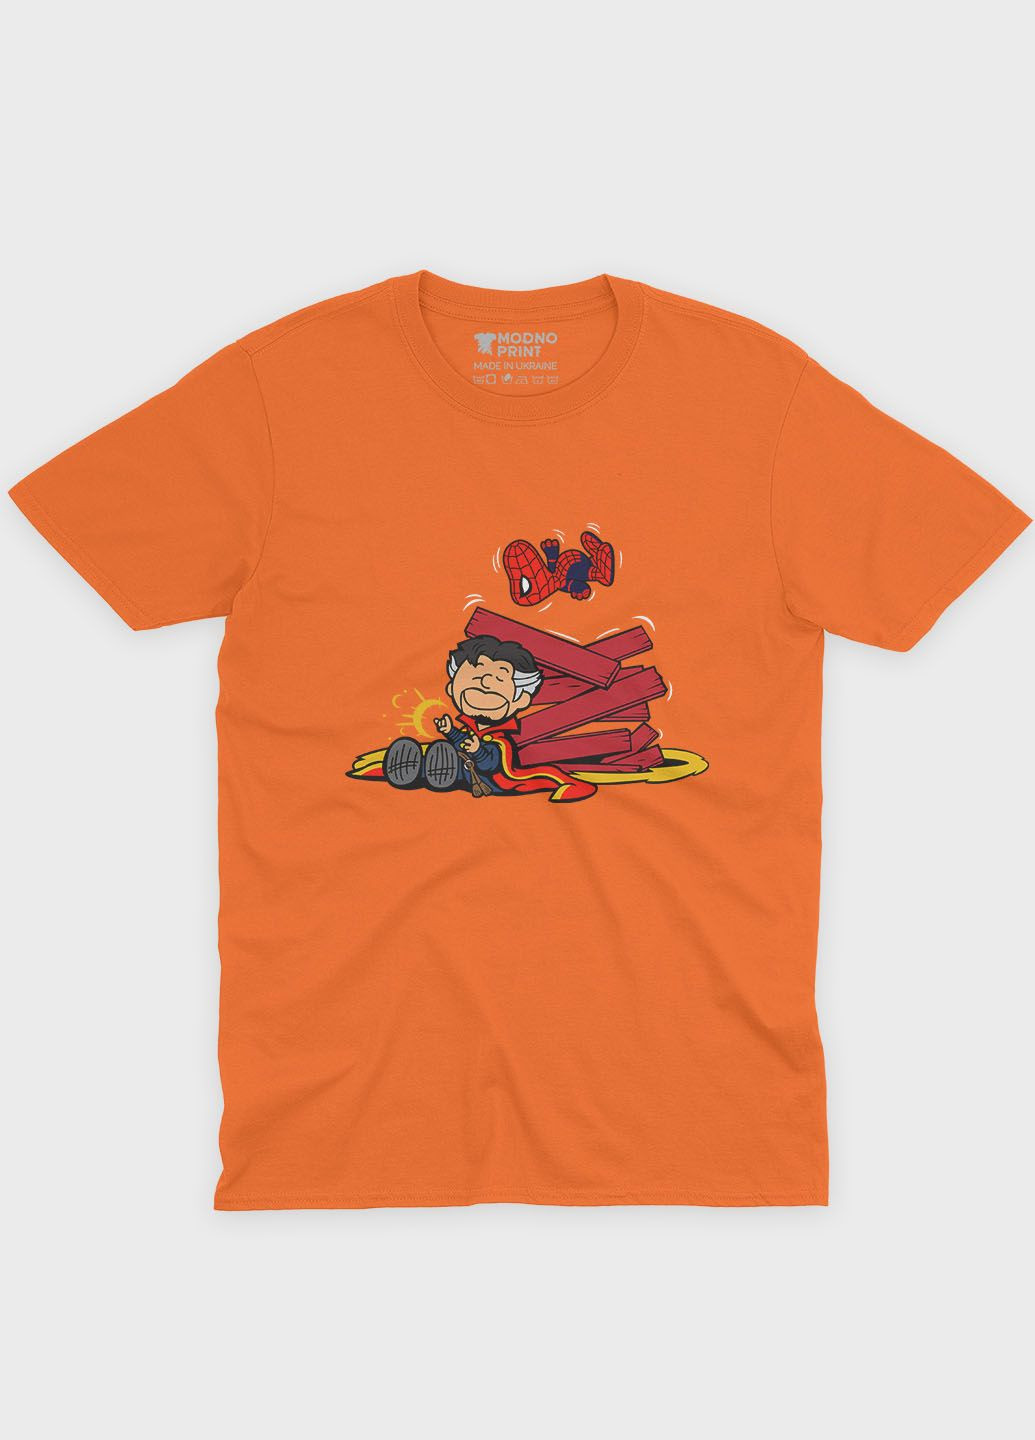 Оранжевая демисезонная футболка для девочки с принтом супергероя - доктор стрэндж (ts001-1-ora-006-020-009-g) Modno